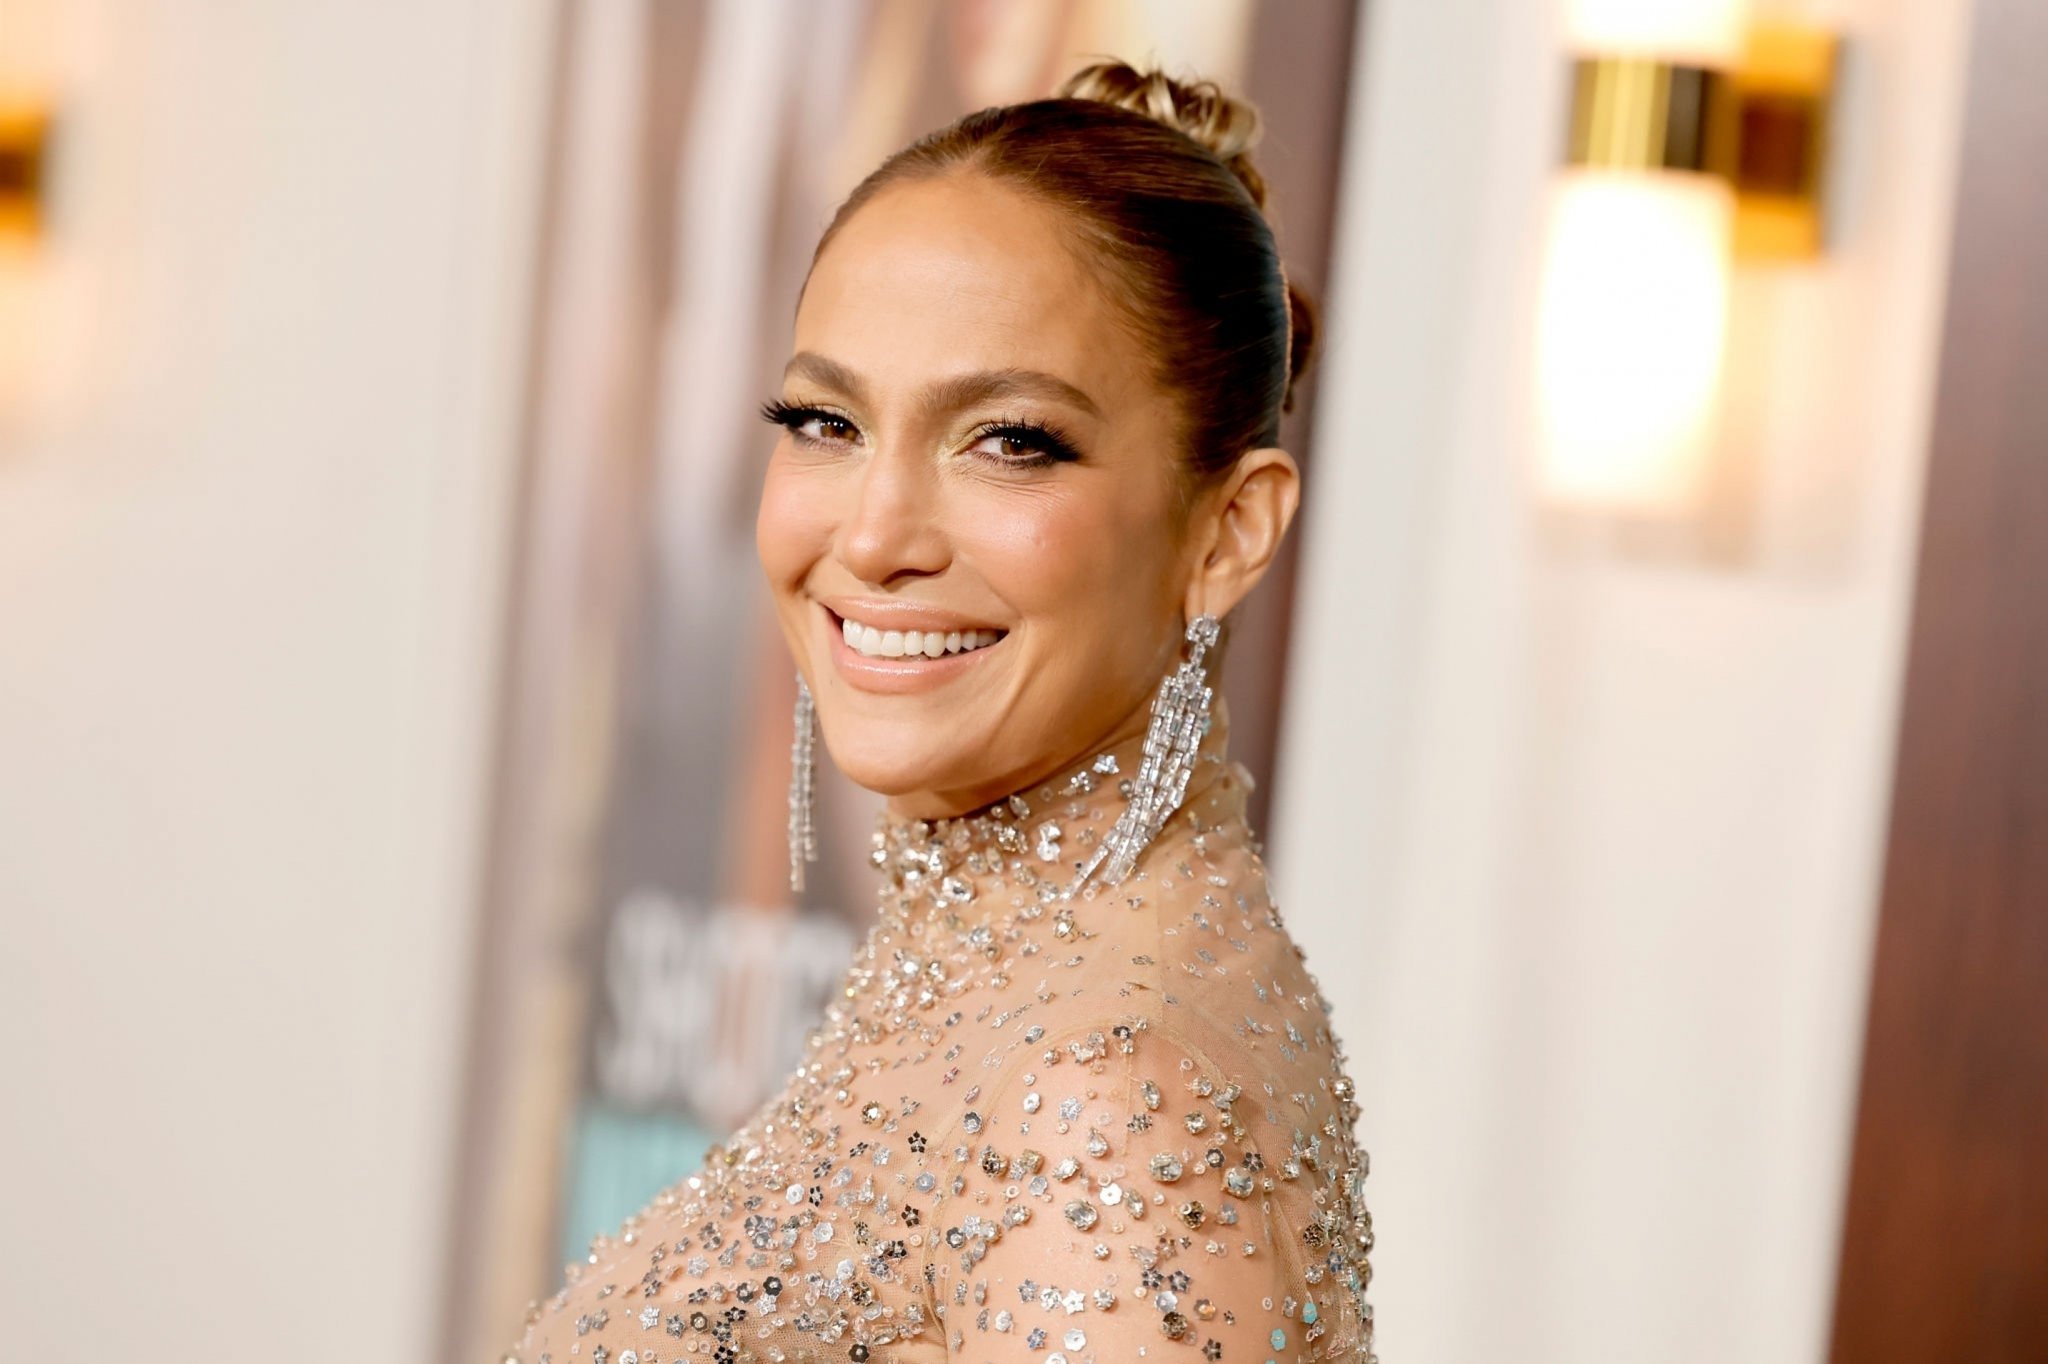 Atlas Jennifer Lopez: Στην δημοσιότητα το τρέιλερ της νέας ταινίας